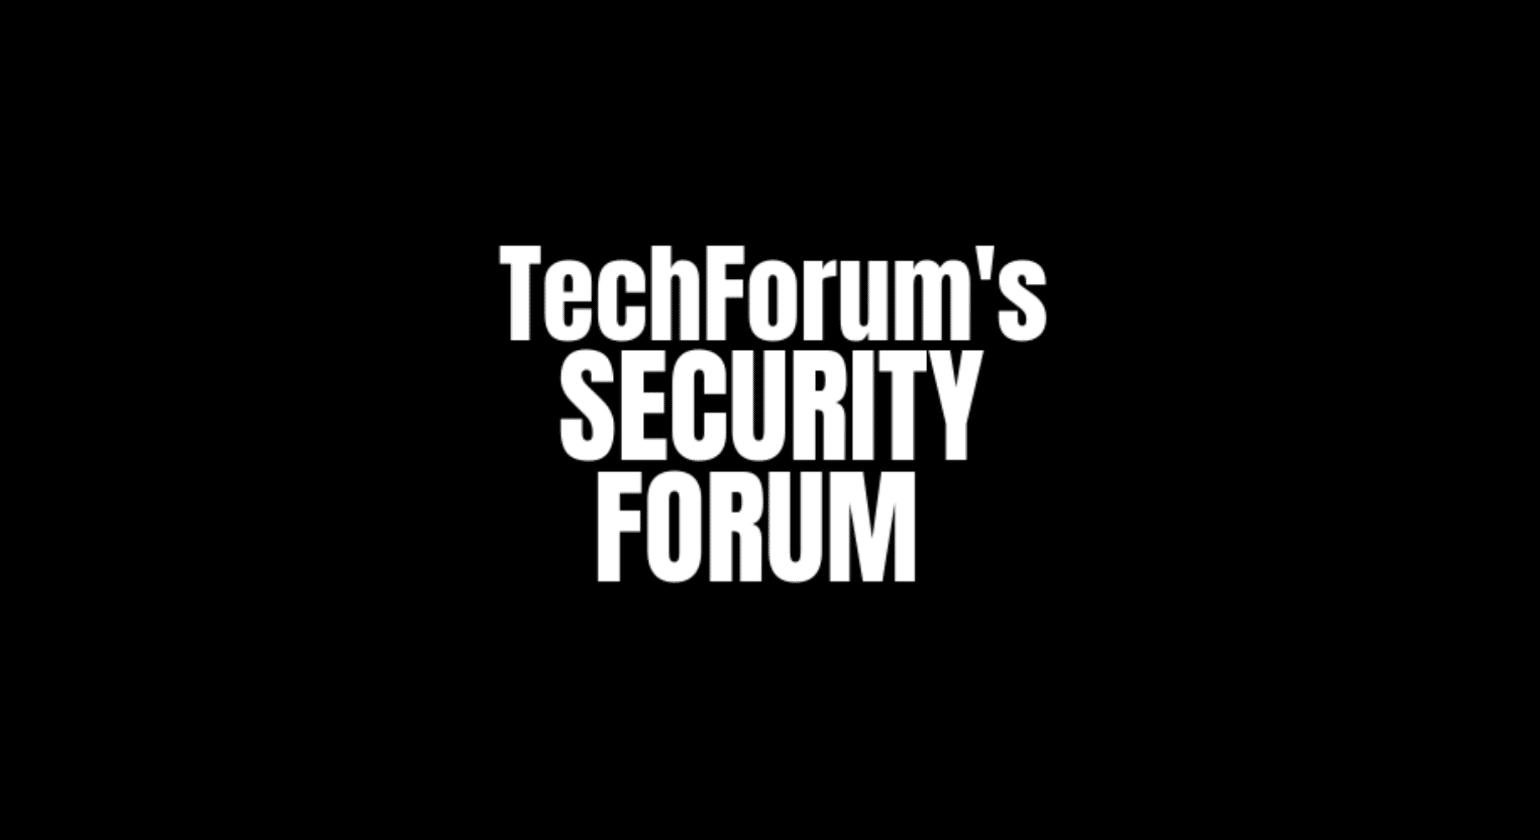 Techforum's security forum